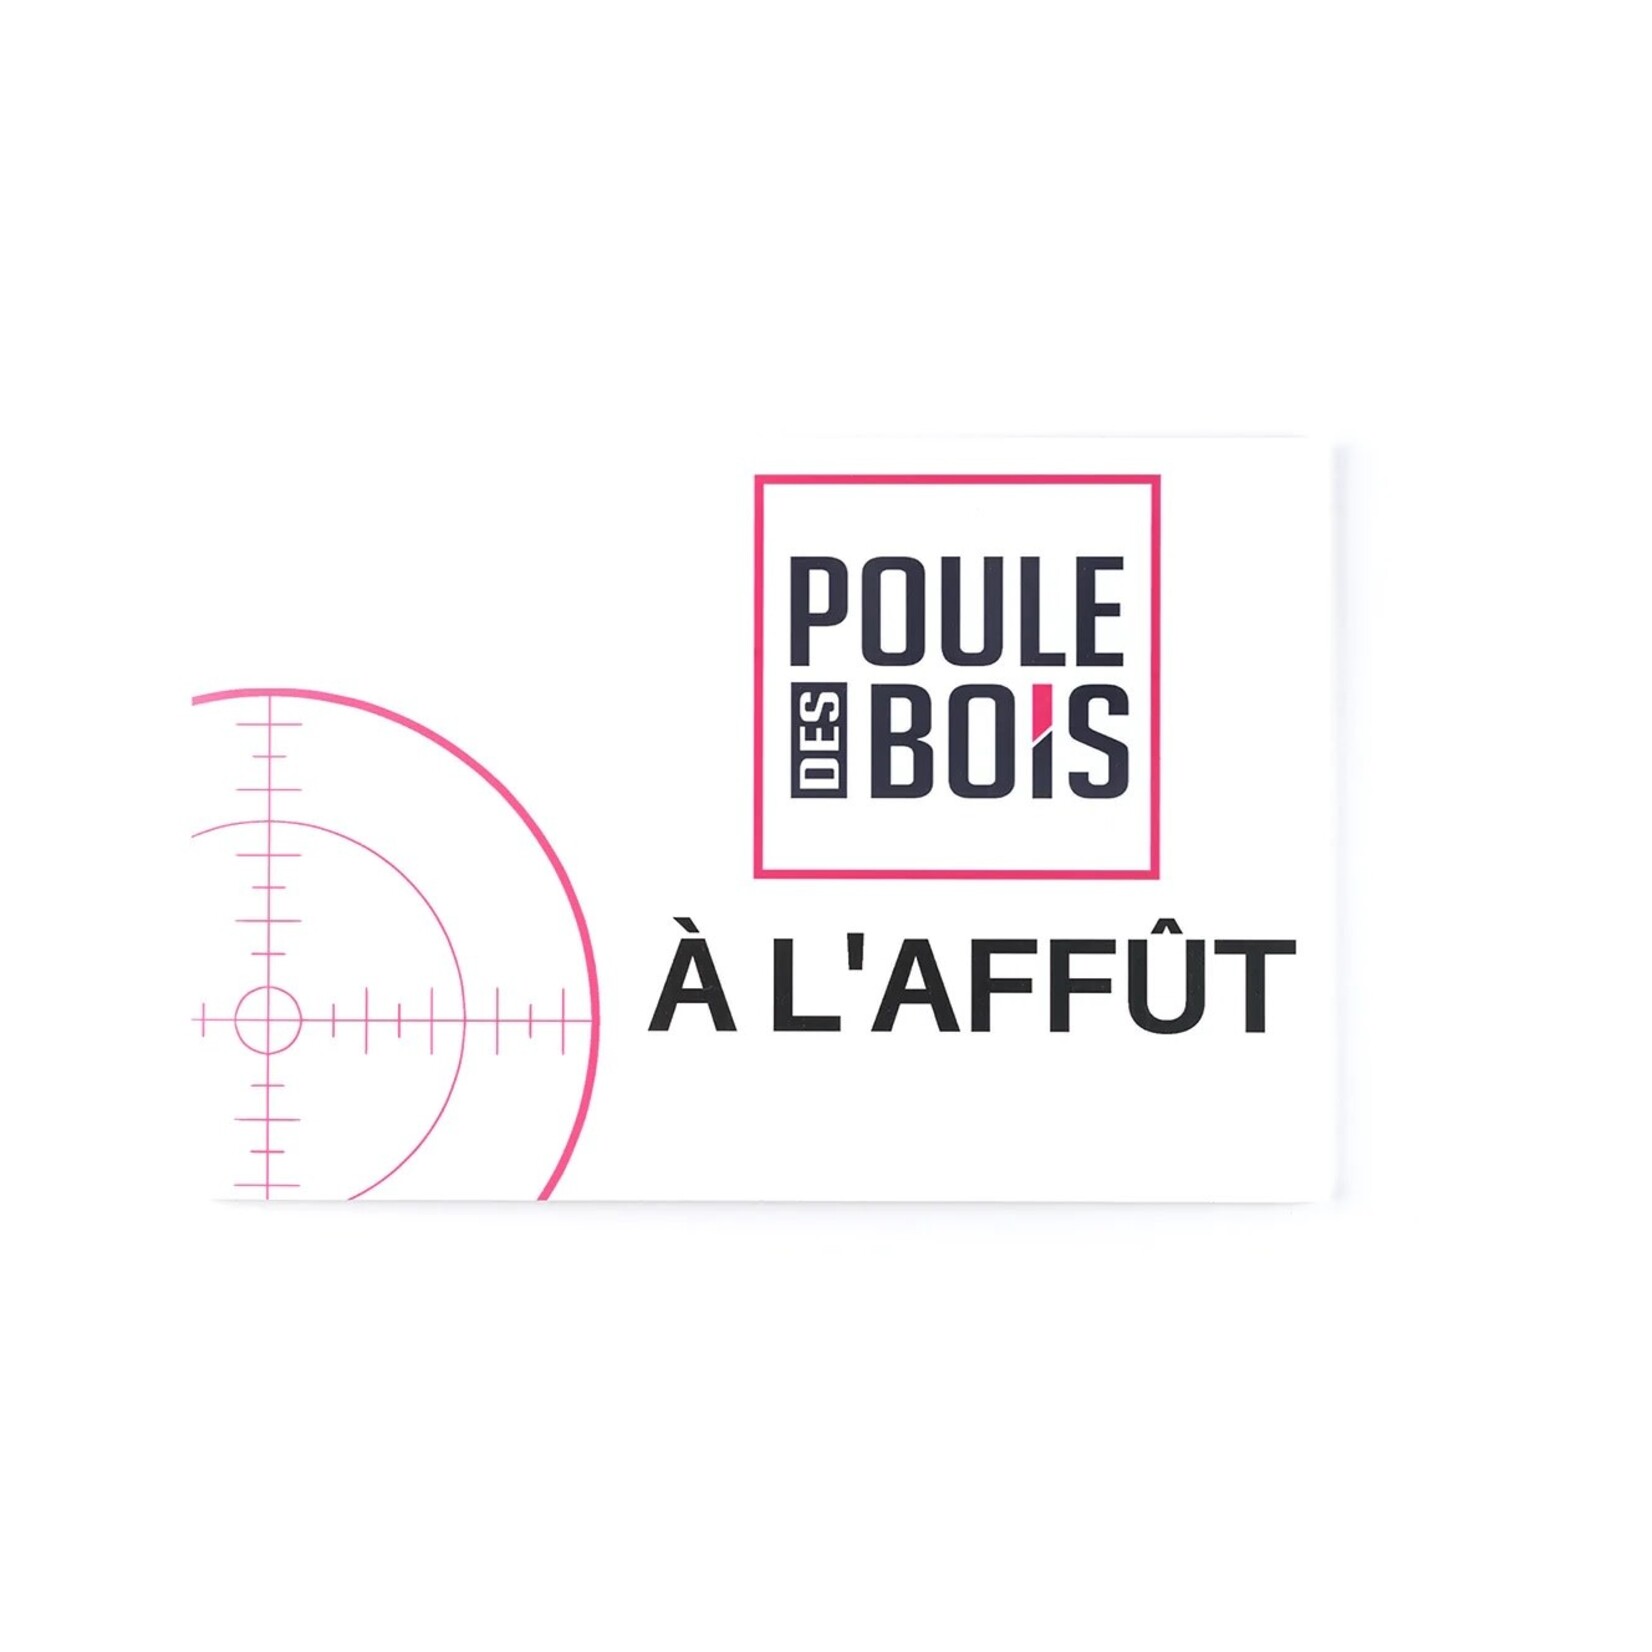 POULE DES BOIS Affiche Poule Des Bois A L'Affût